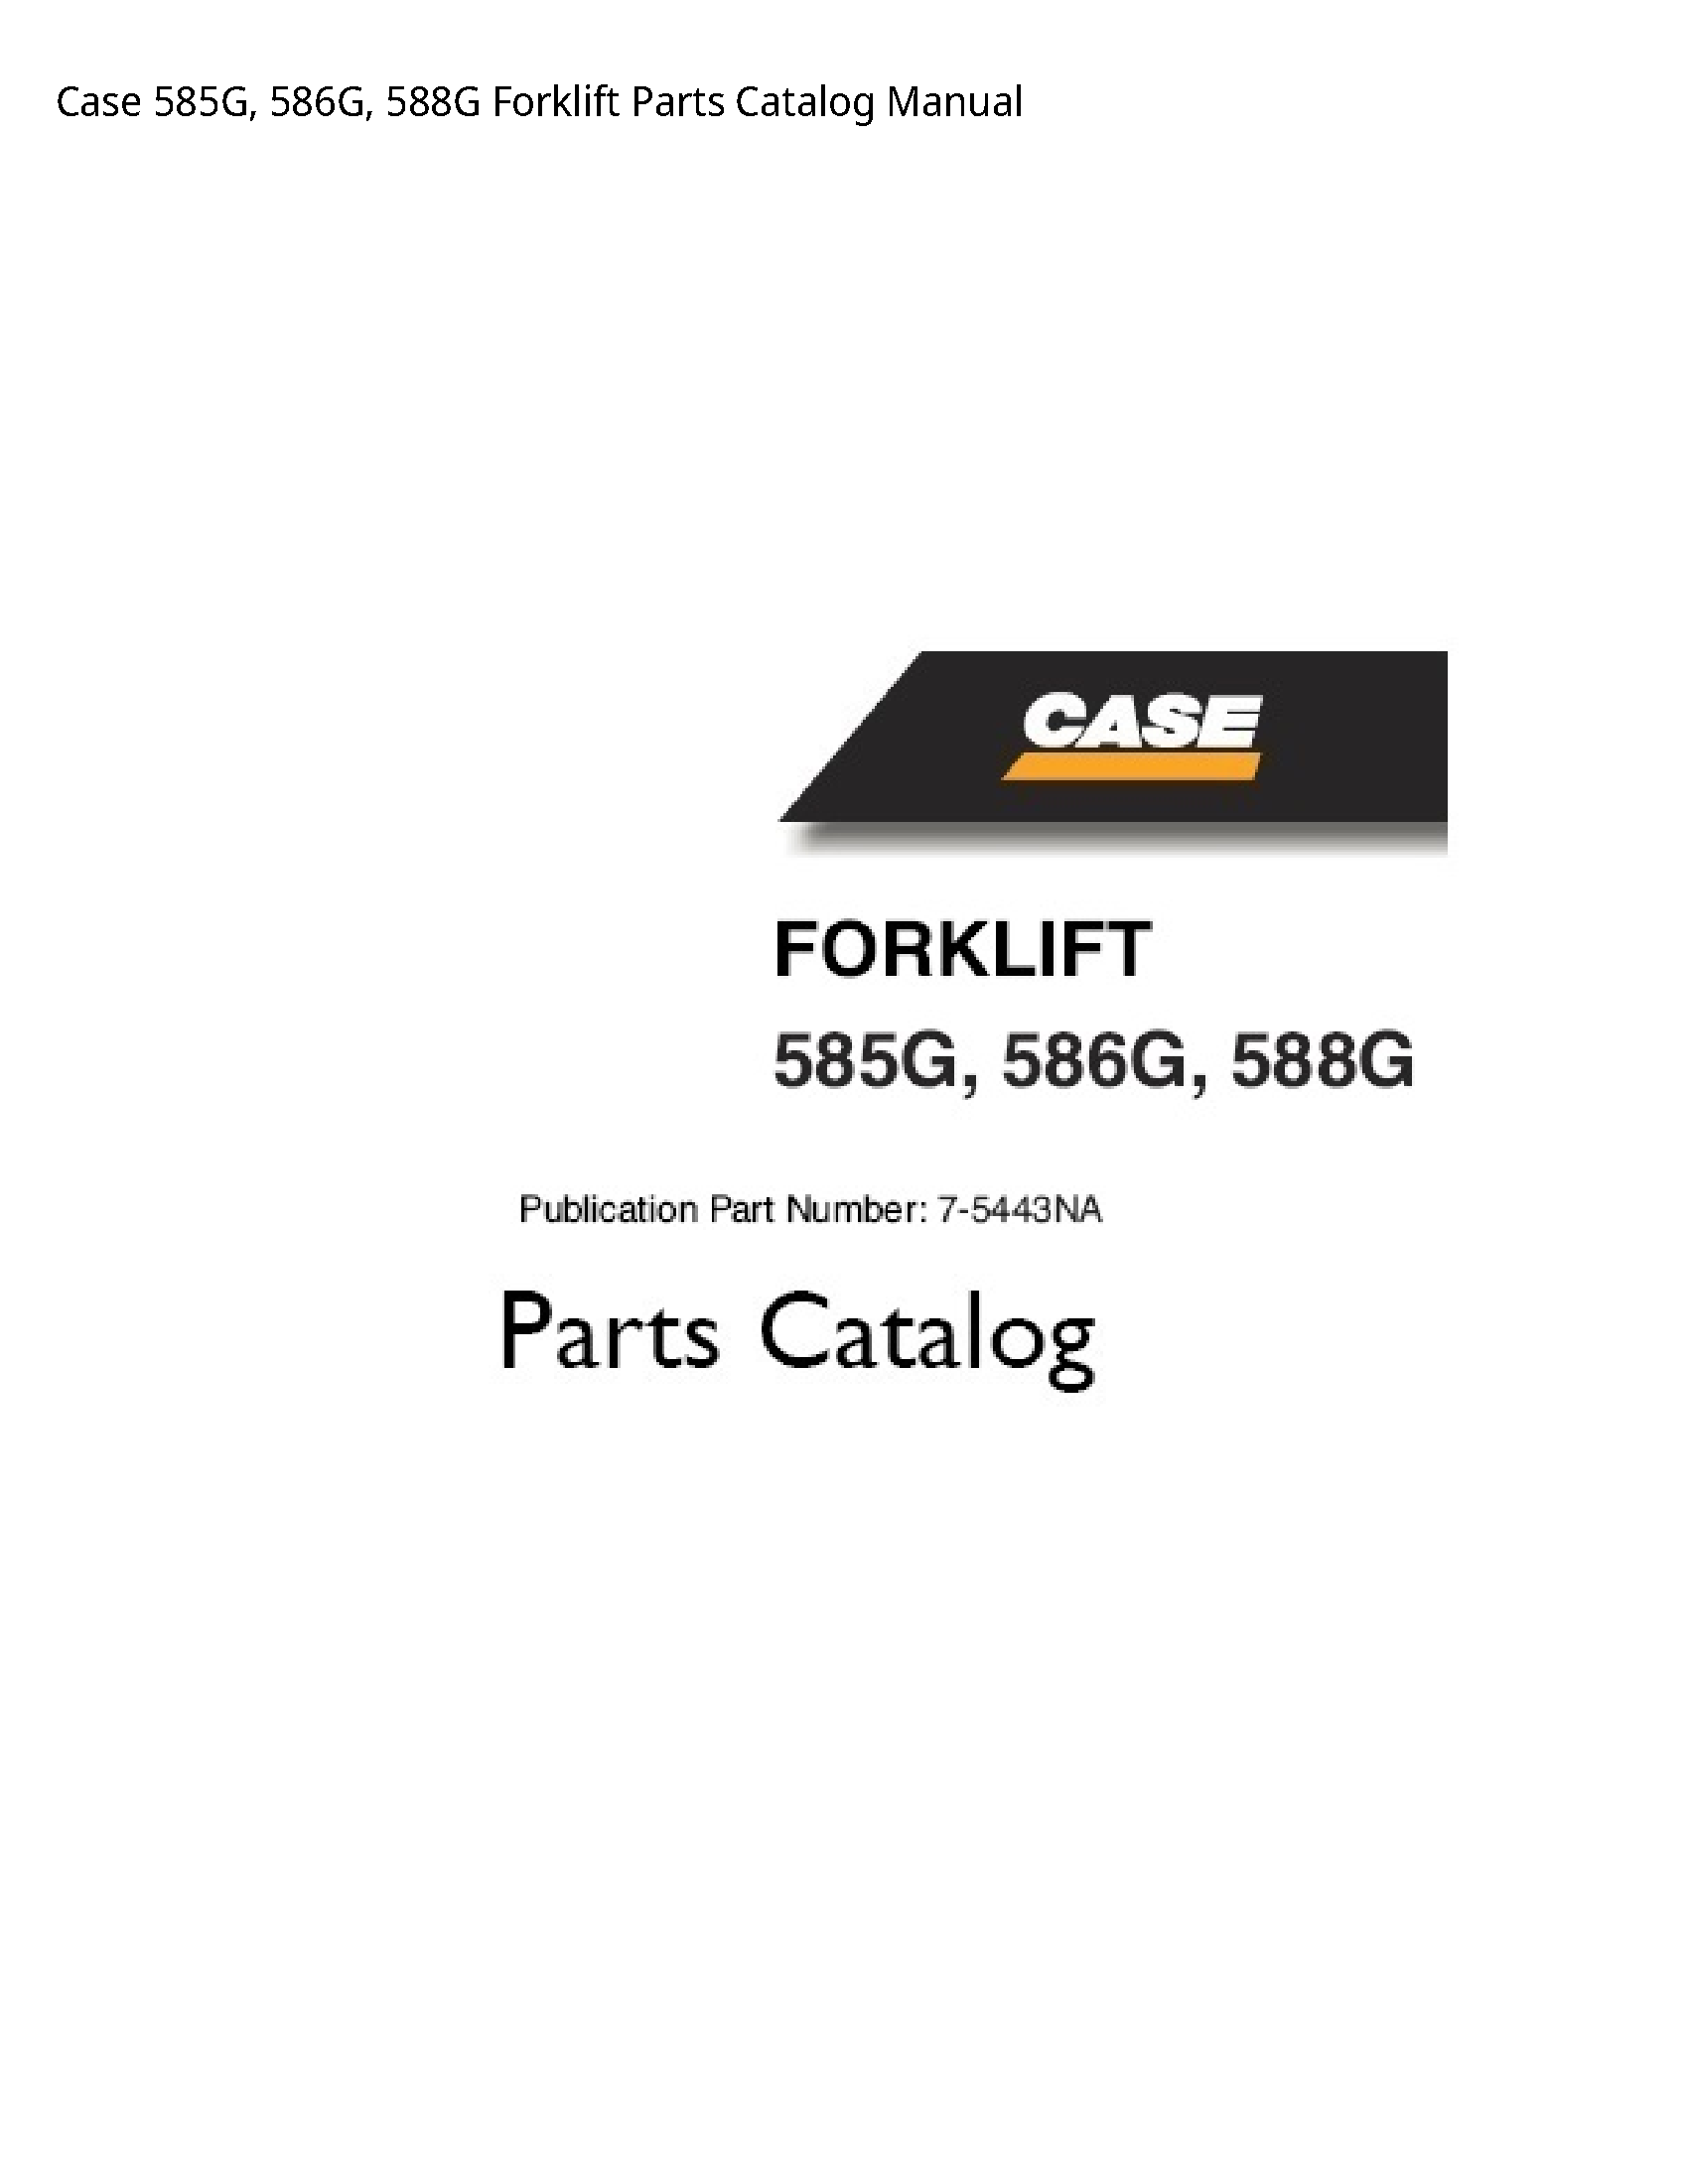 Case/Case IH 585G Forklift Parts Catalog manual